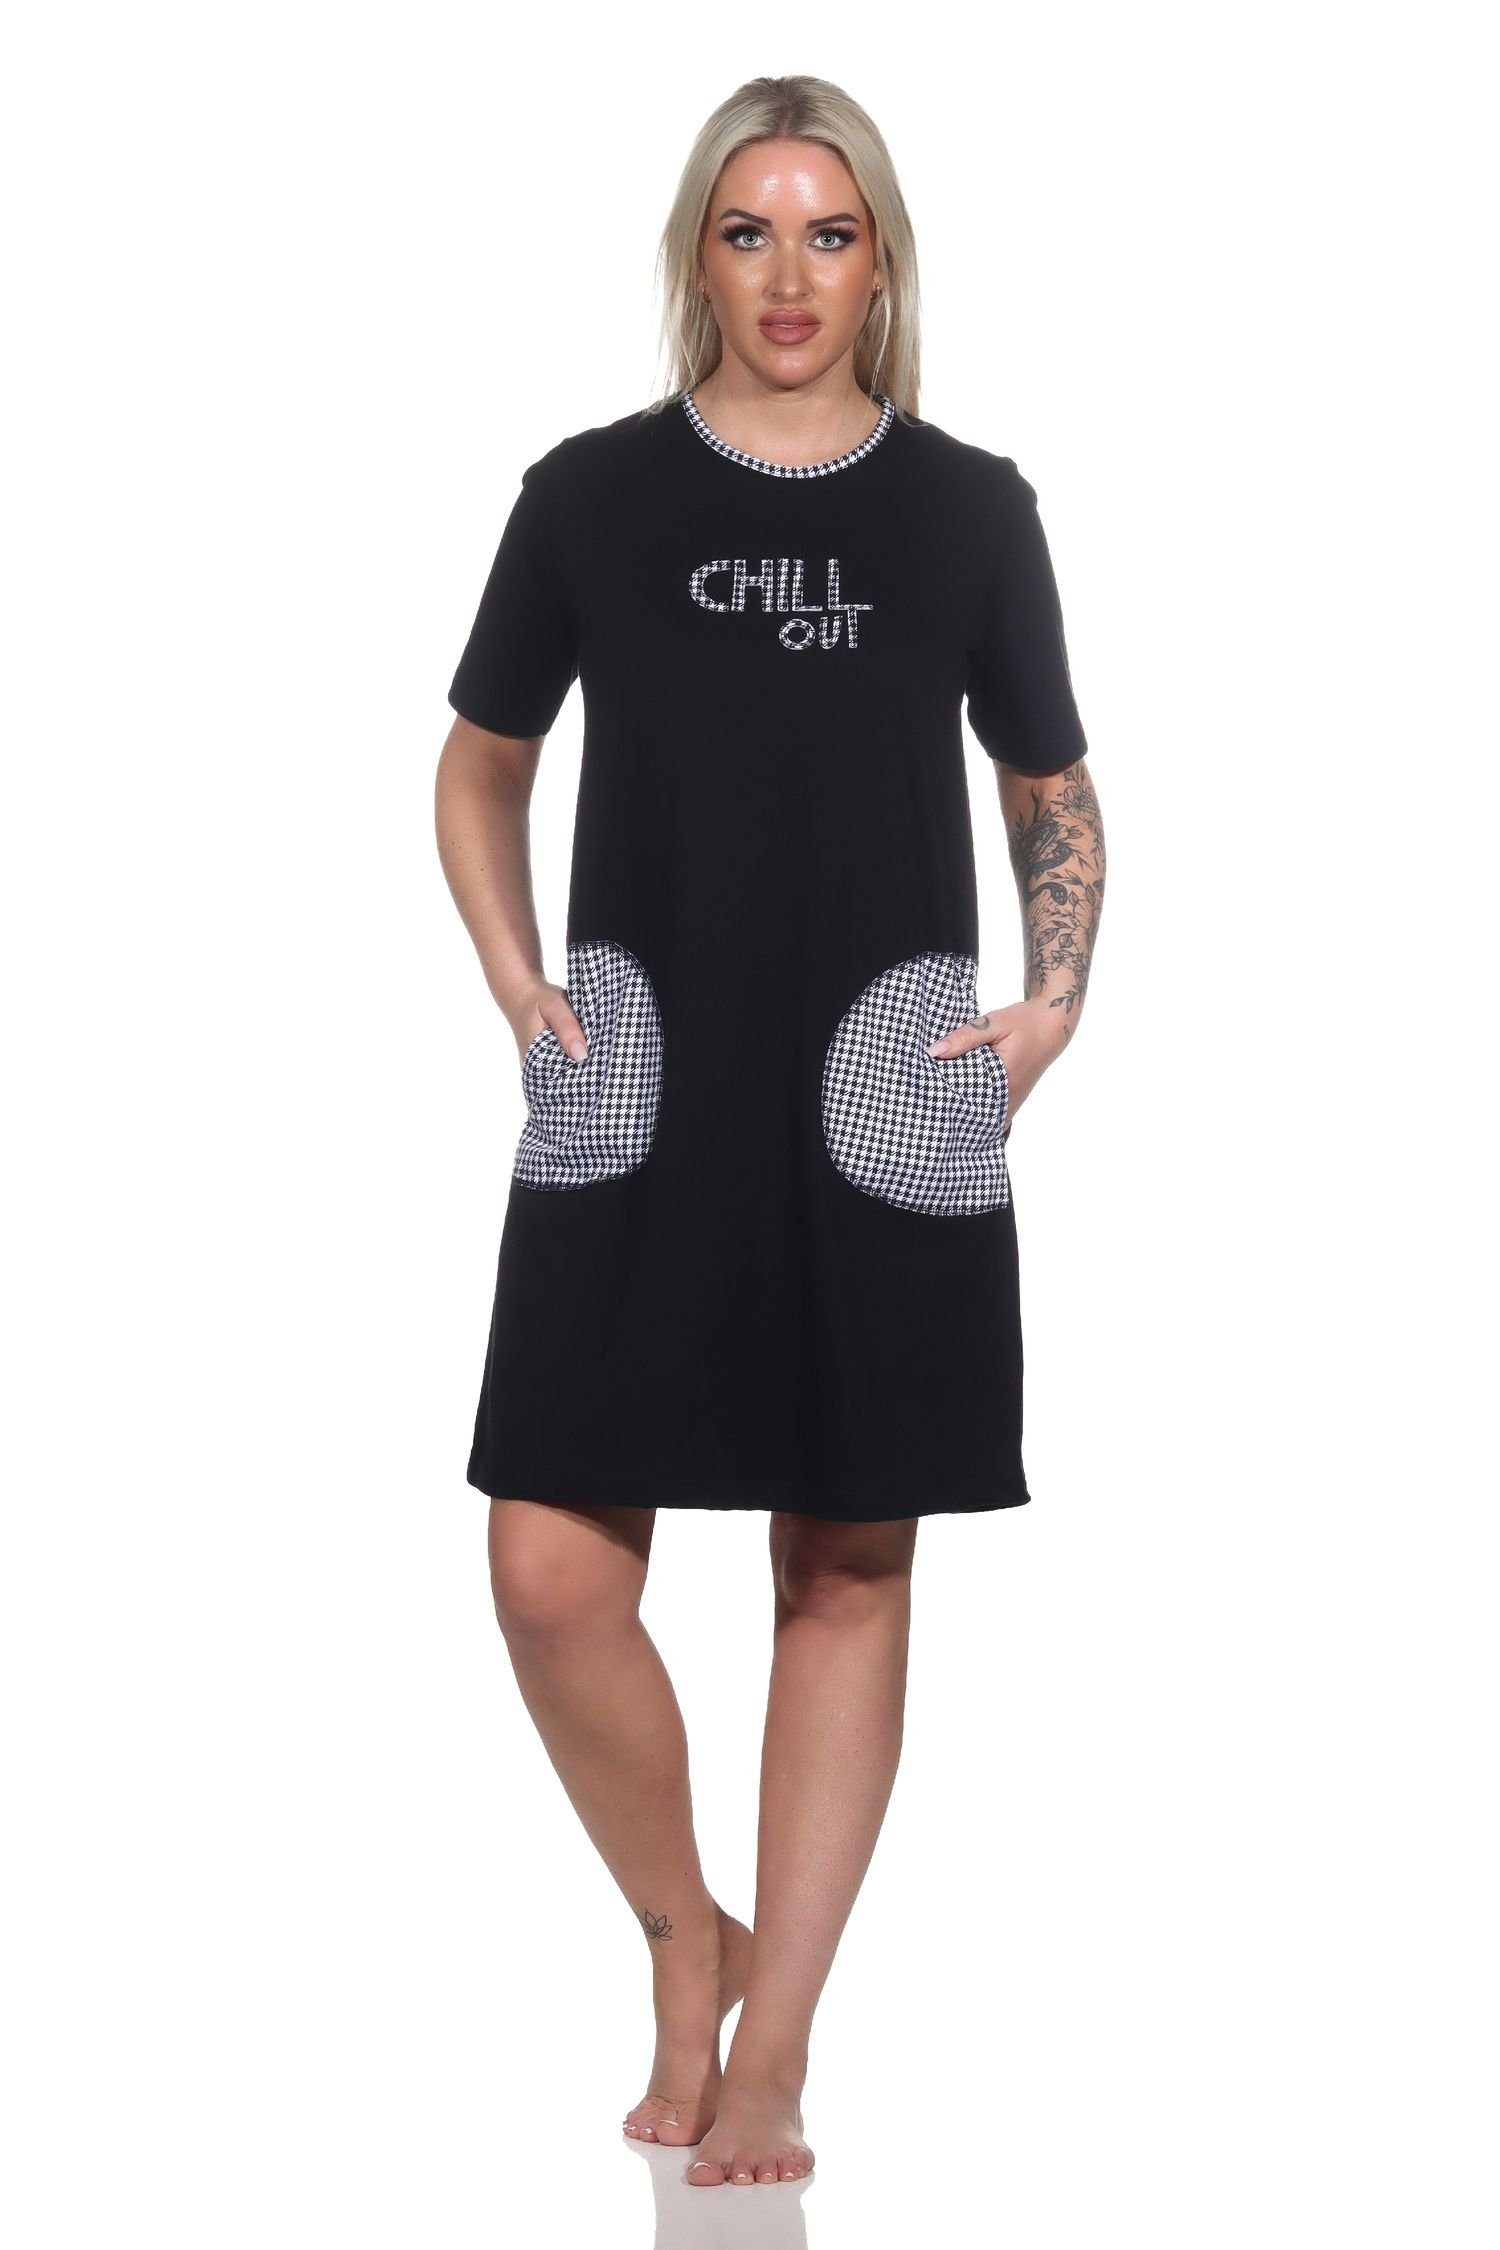 Normann Nachthemd Damen kurzarm Nachthemd mit aufgesetzten Taschen und Frontprint schwarz